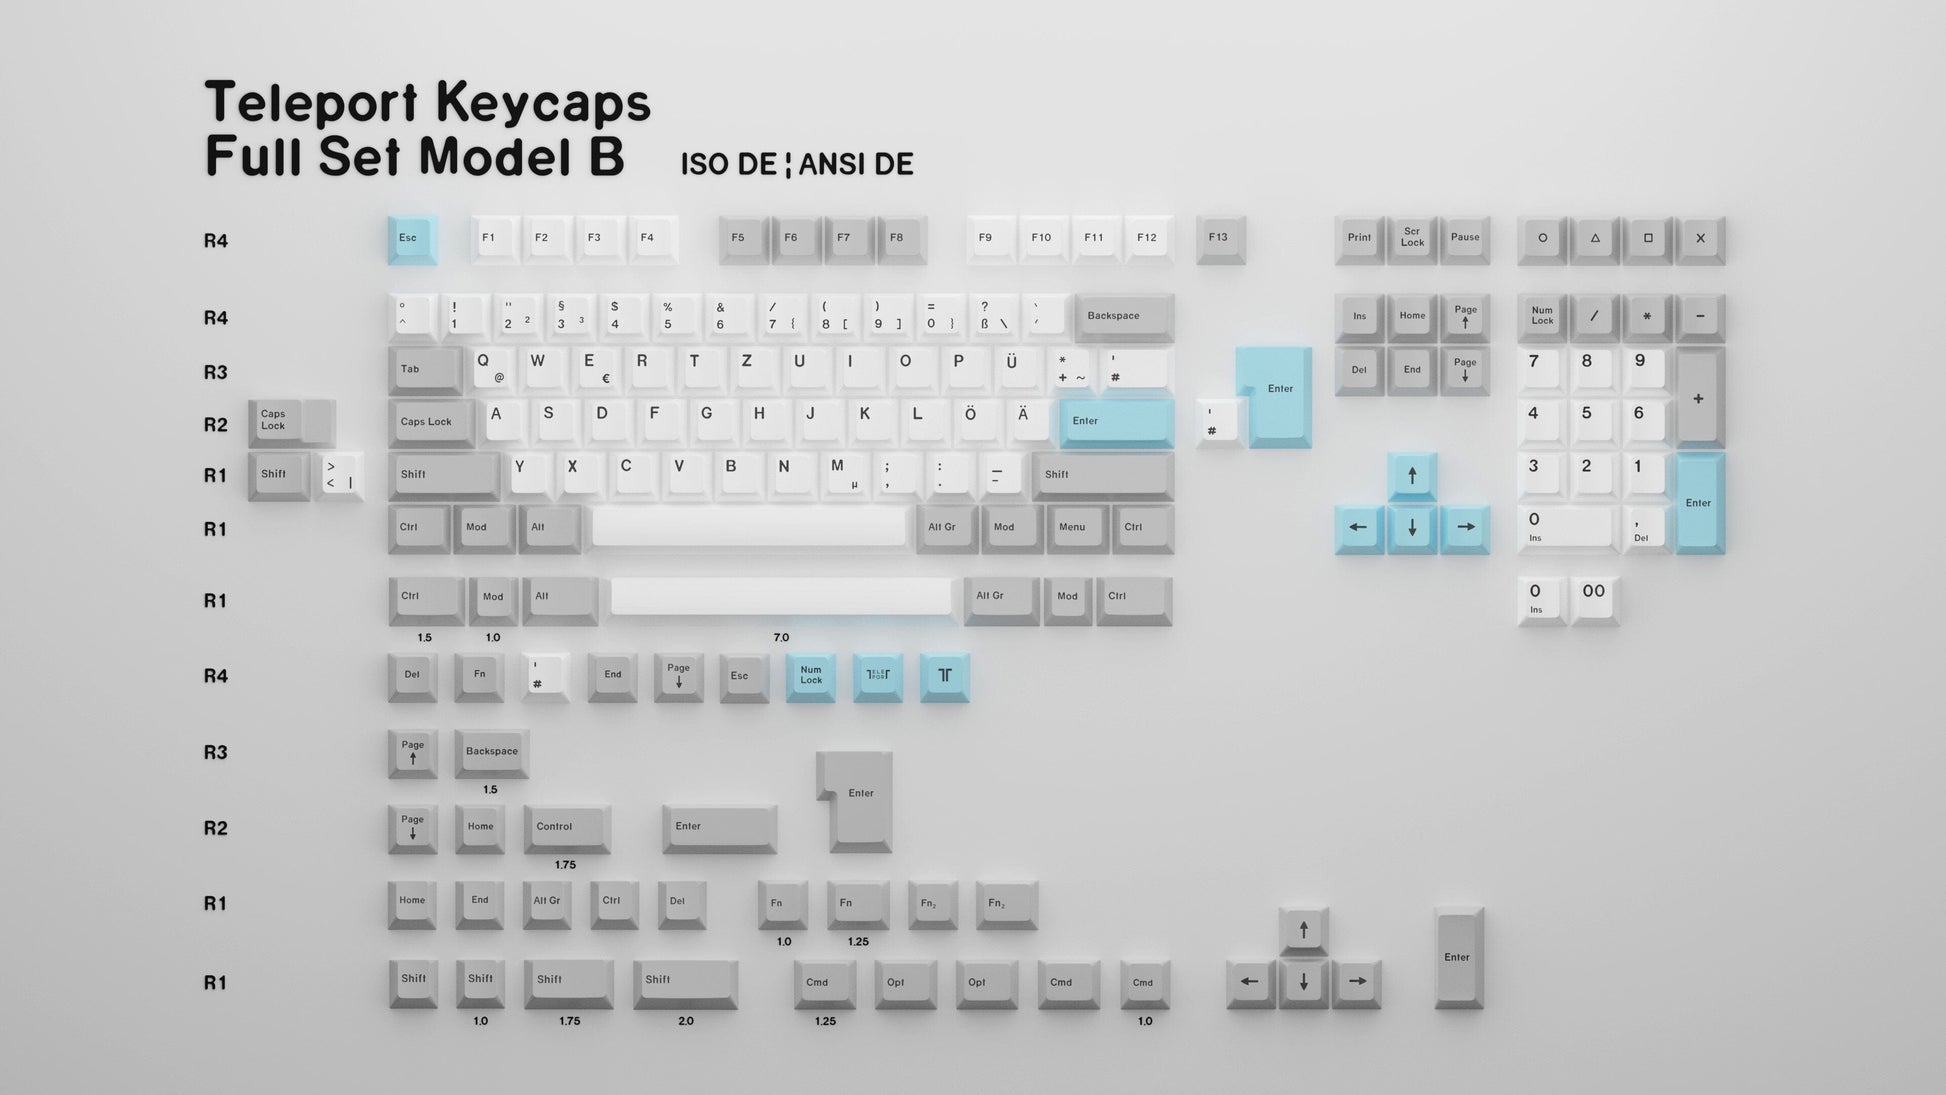 The Teleport Teleport Keycaps (ISO DE - ANSI DE) Full Set Model B